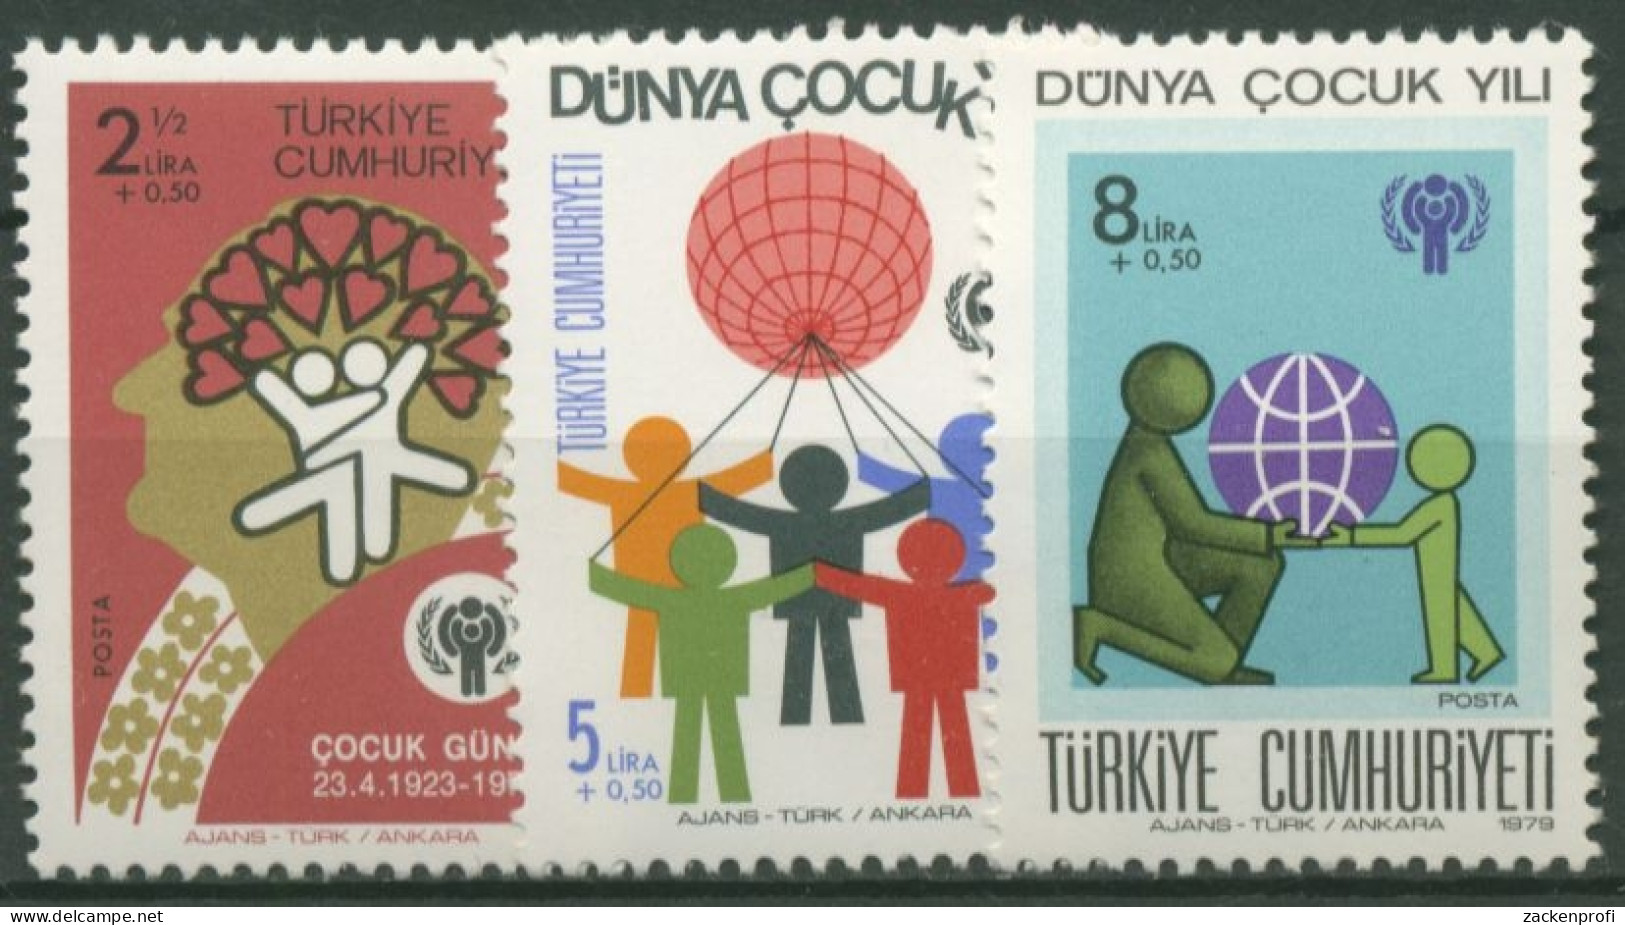 Türkei 1979 Internationales Jahr Des Kindes 2474/76 Postfrisch - Nuovi